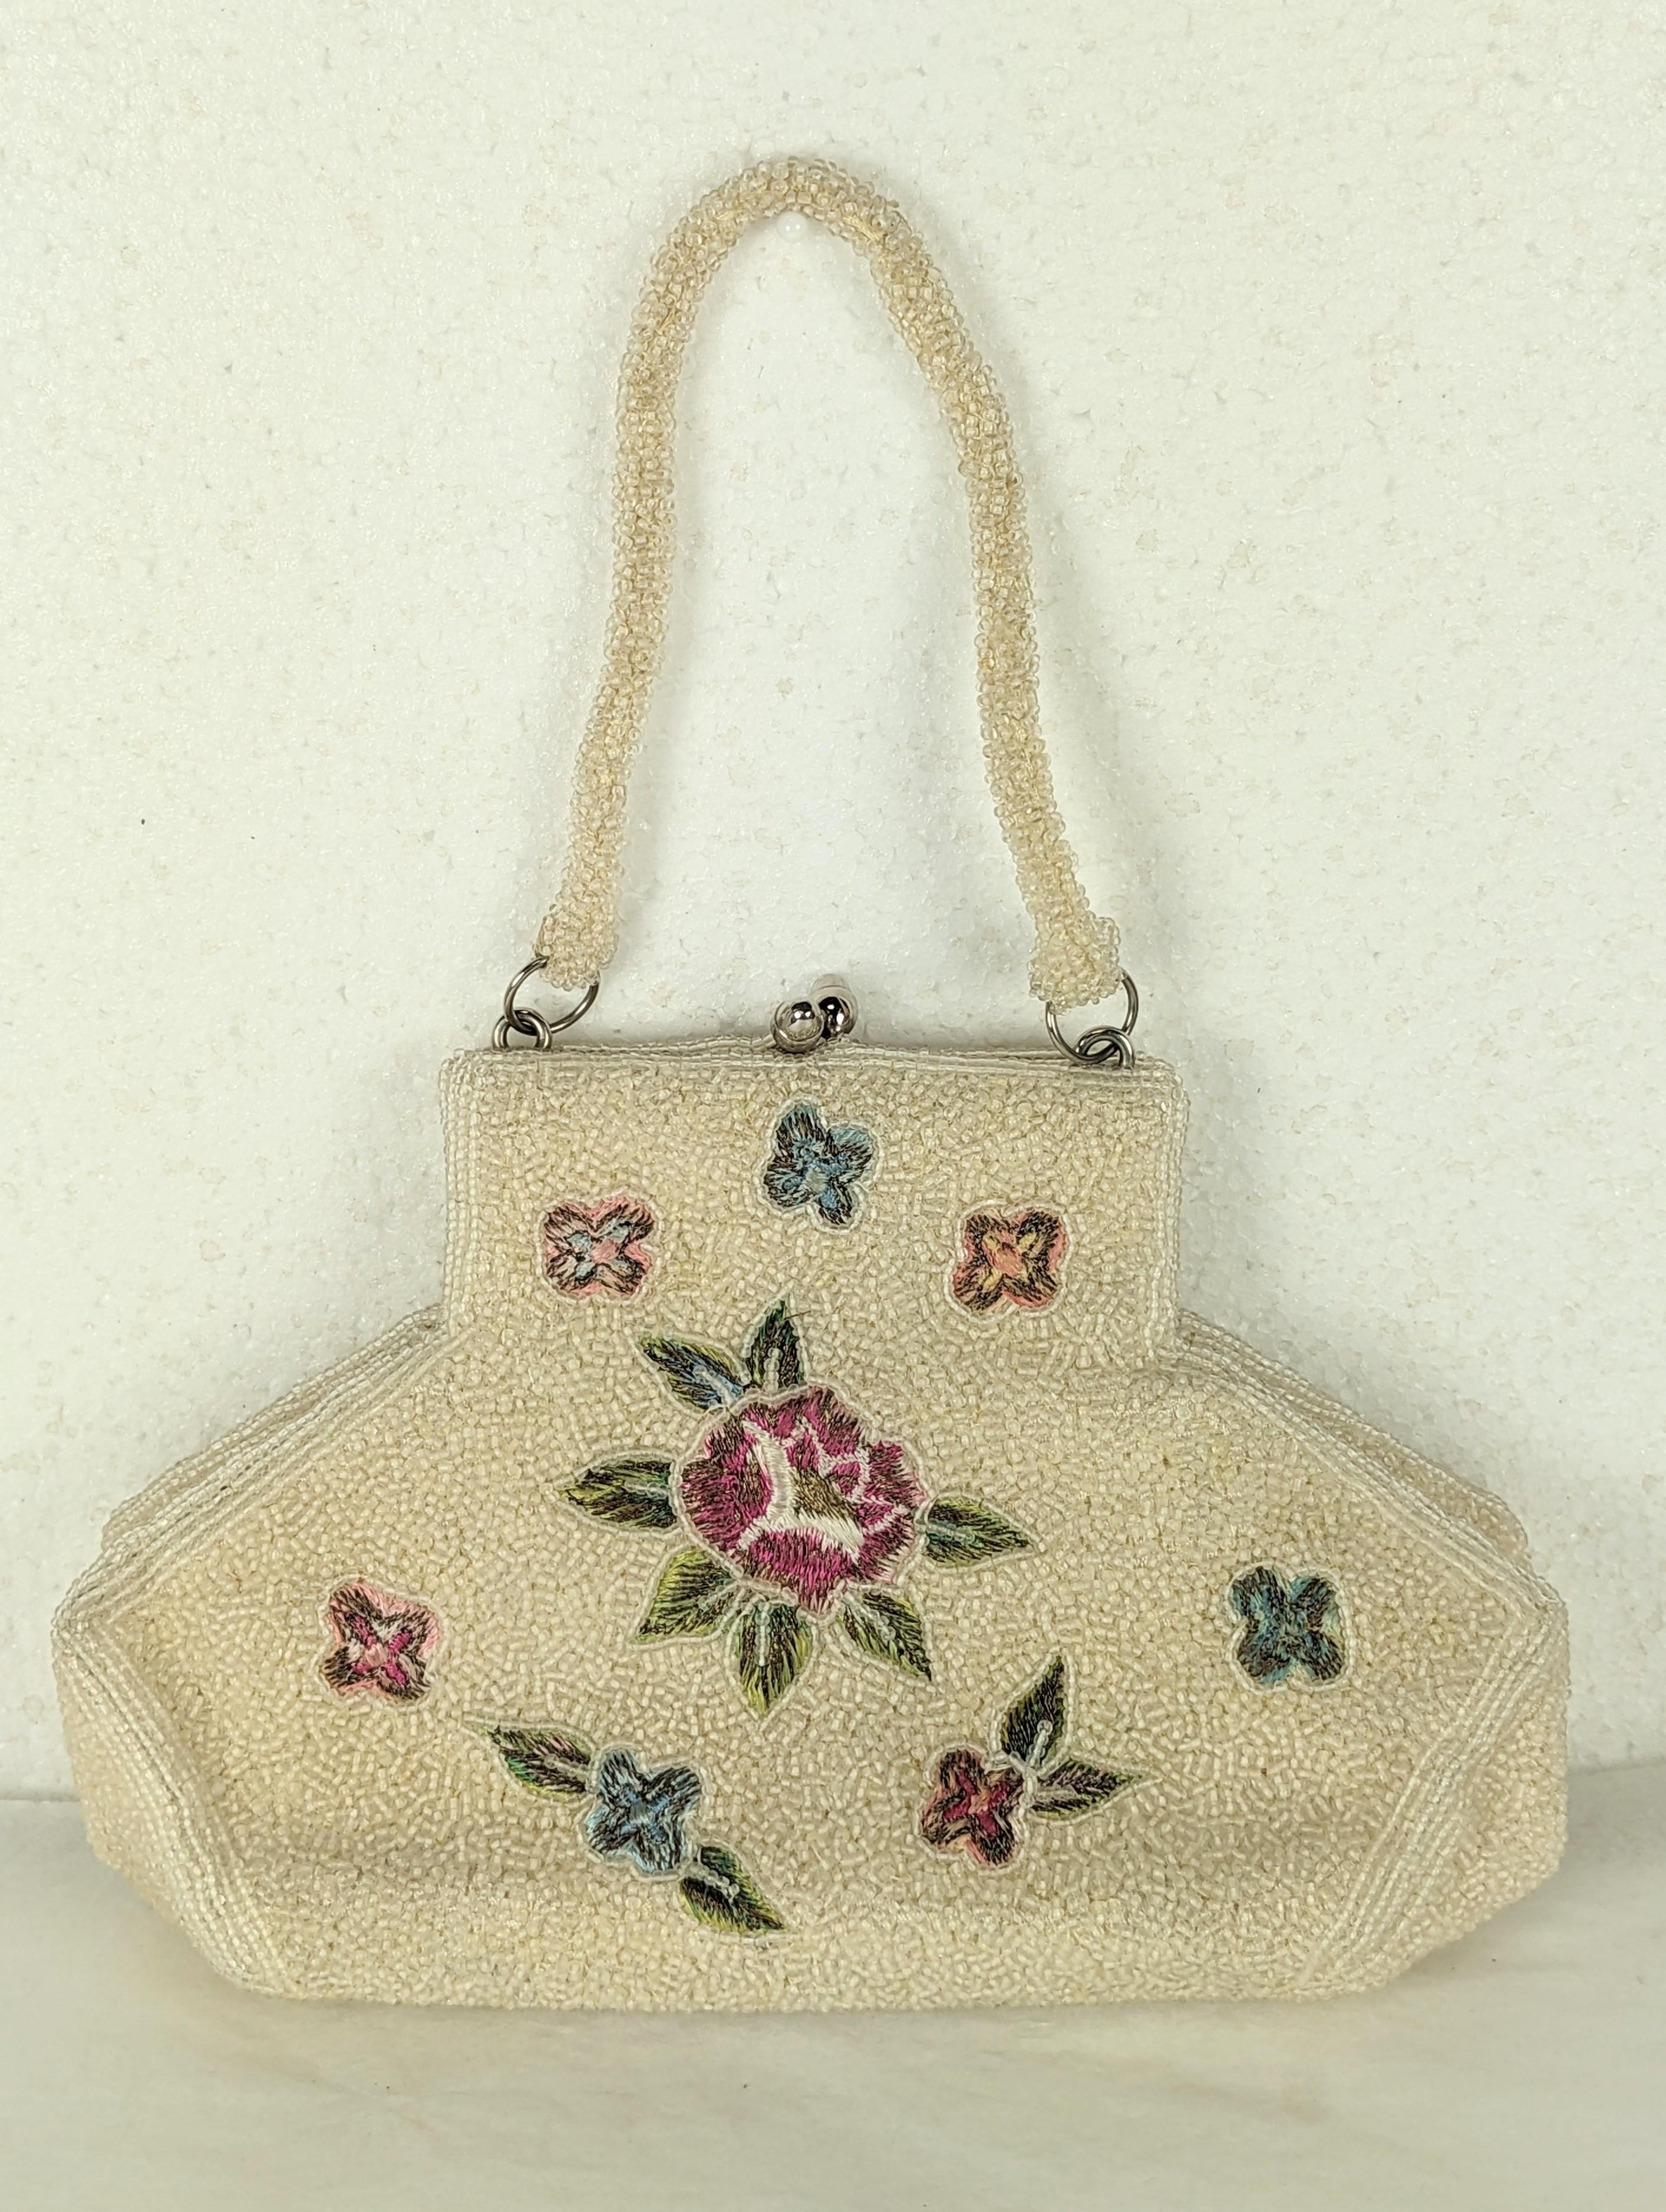 Außergewöhnliche Tasche mit Perlen und Stickereien von Charlet Bags. Die Blumen sind mit farbigen Seidenfäden und Metallic-Garn auf einer Basis aus elfenbeinfarbenen Saatperlen handgestickt. Die Form ist ungewöhnlich, hält aber am Boden viel aus.